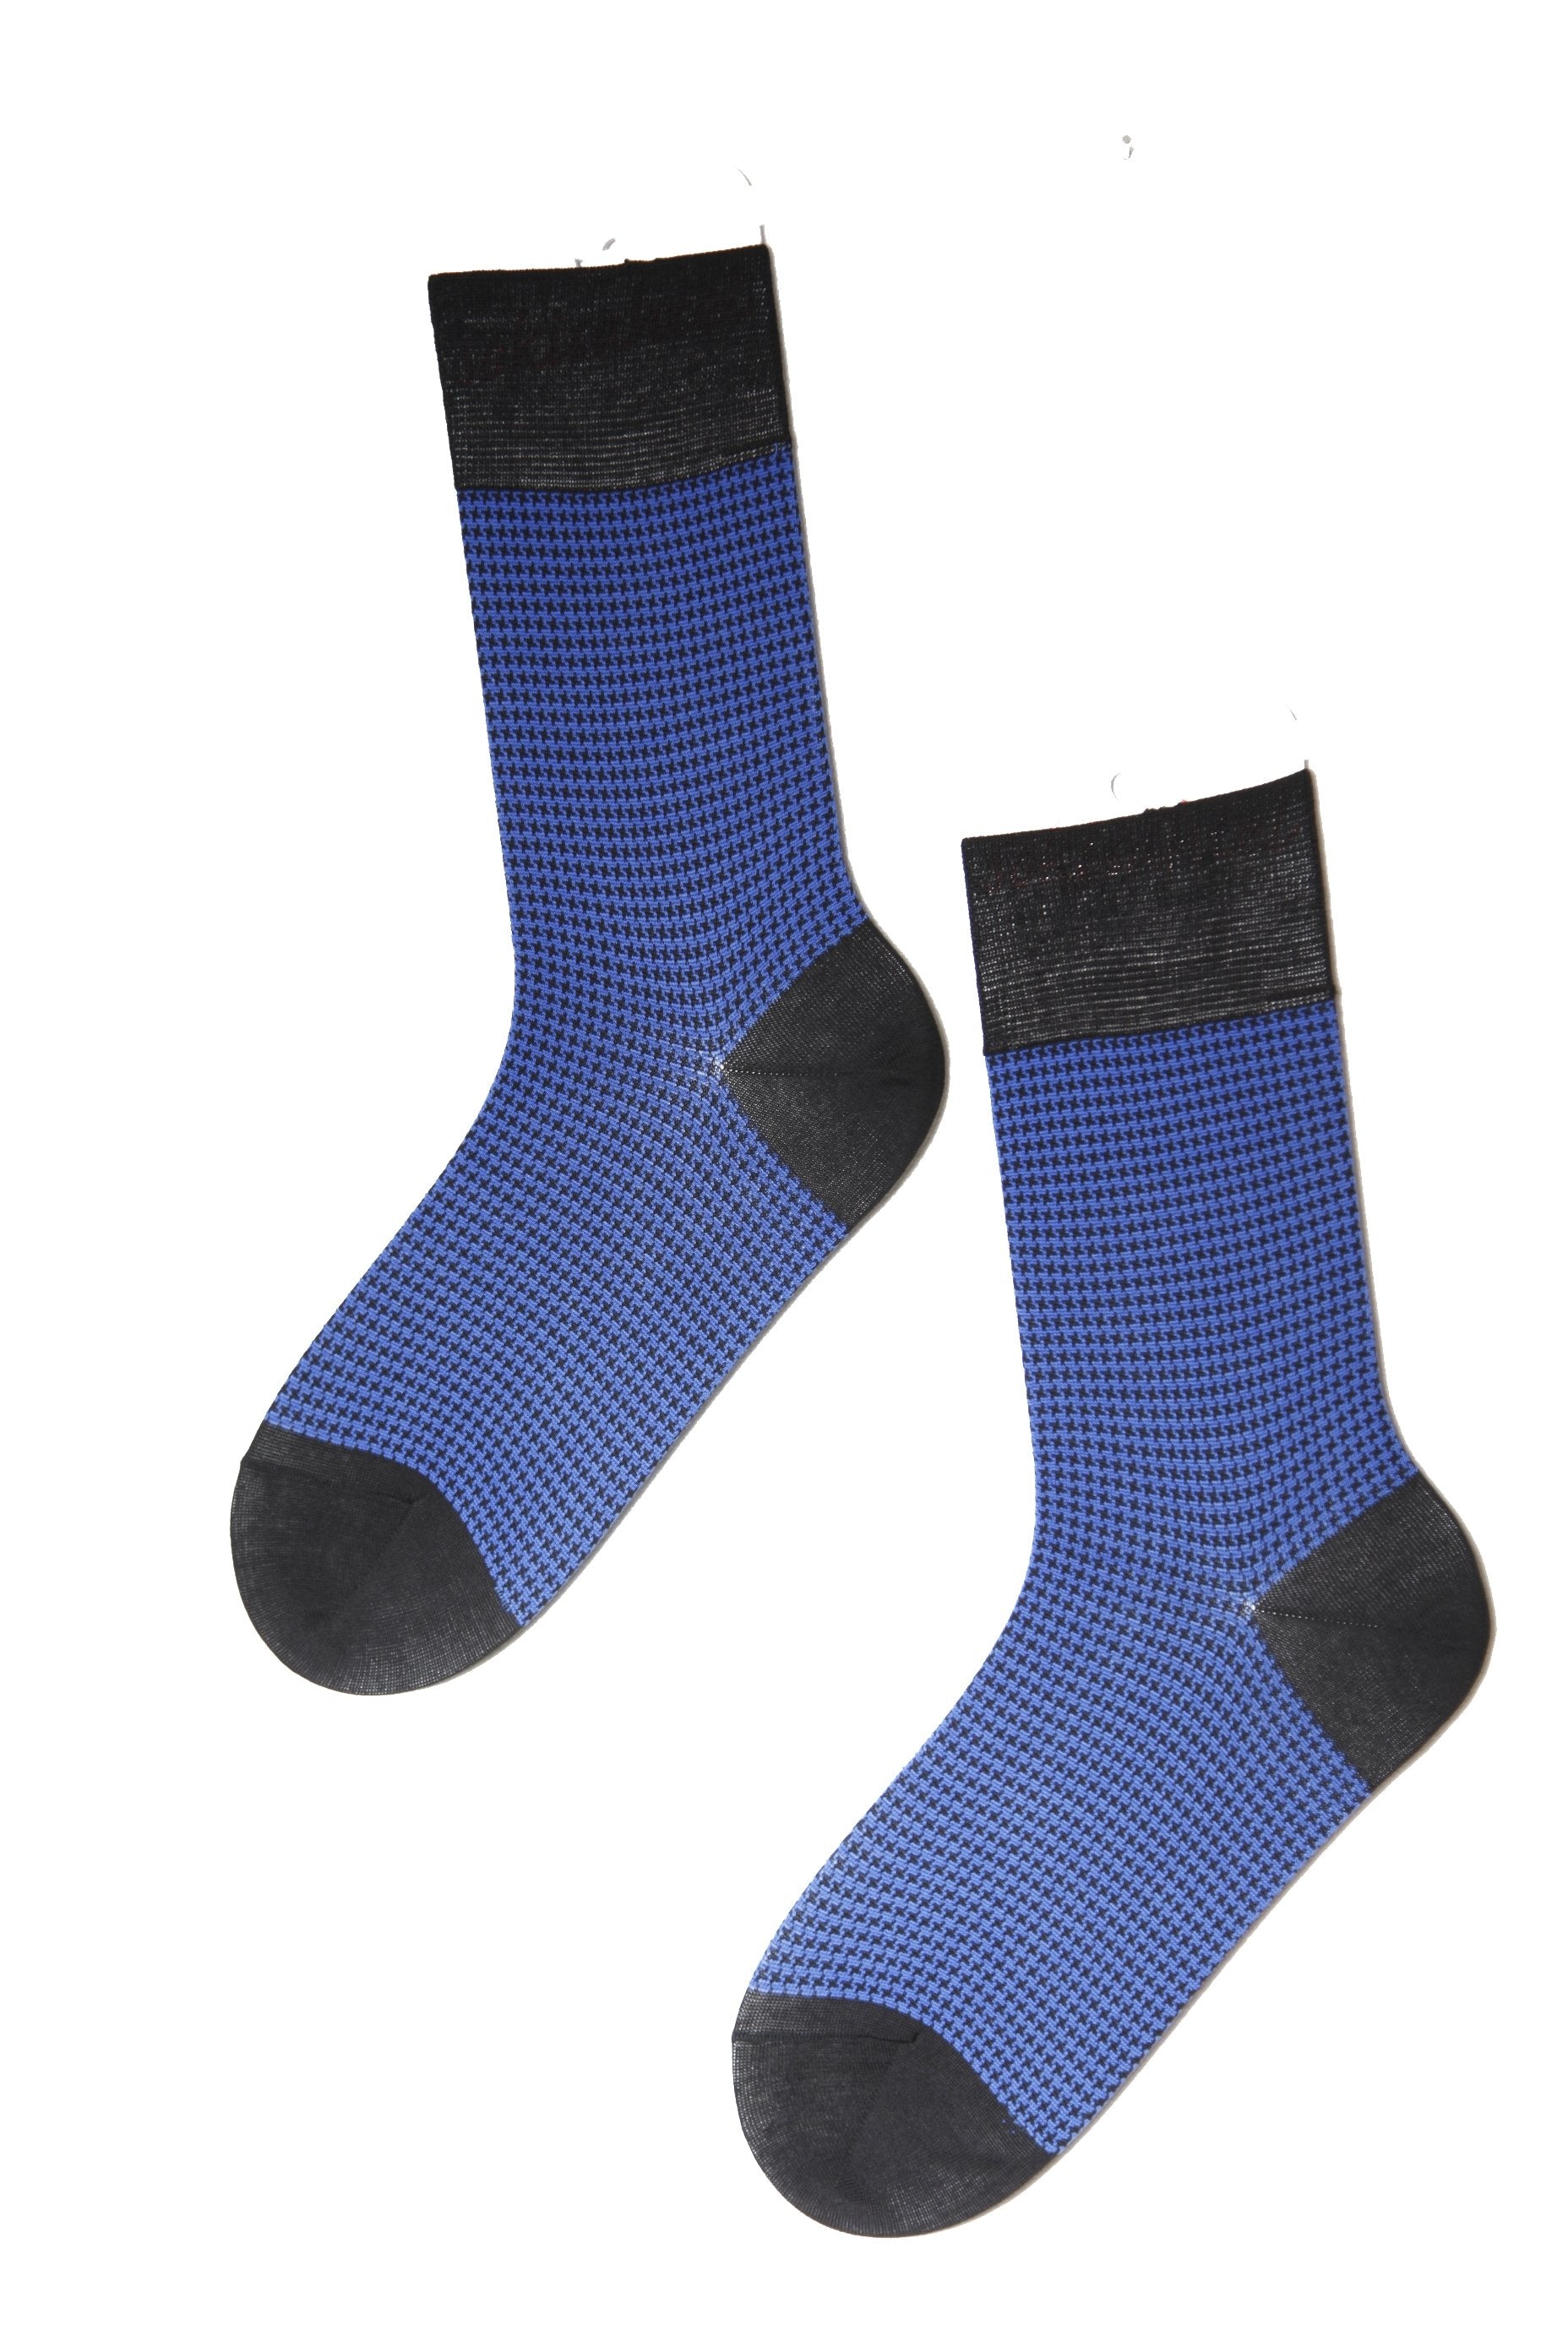 CECAR men's blue suit socks